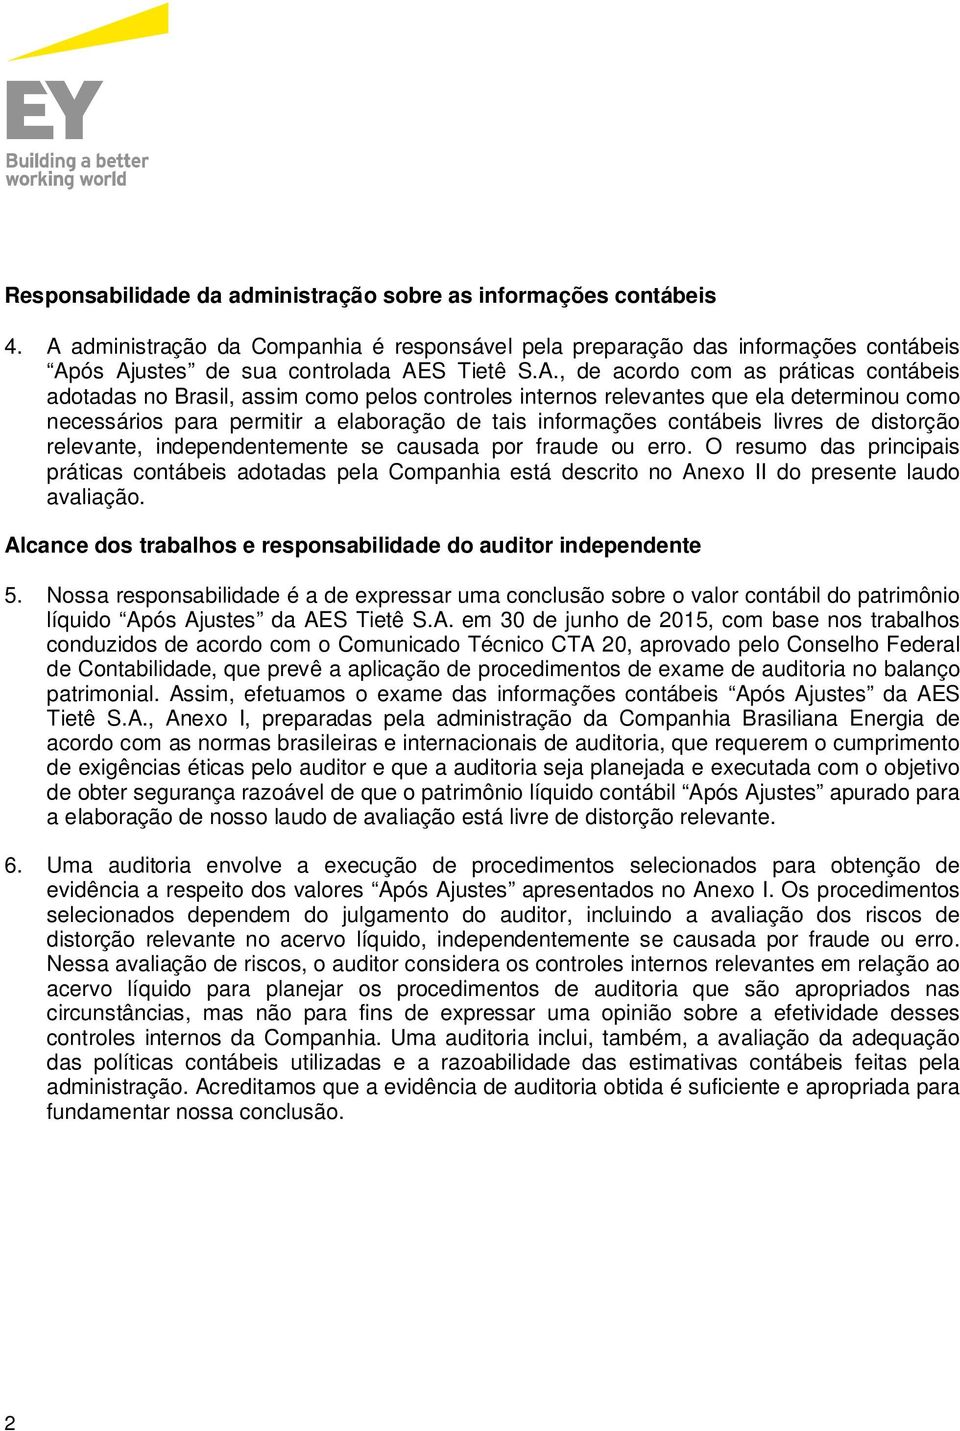 ós Ajustes de sua controlada AES Tietê S.A., de acordo com as práticas contábeis adotadas no Brasil, assim como pelos controles internos relevantes que ela determinou como necessários para permitir a